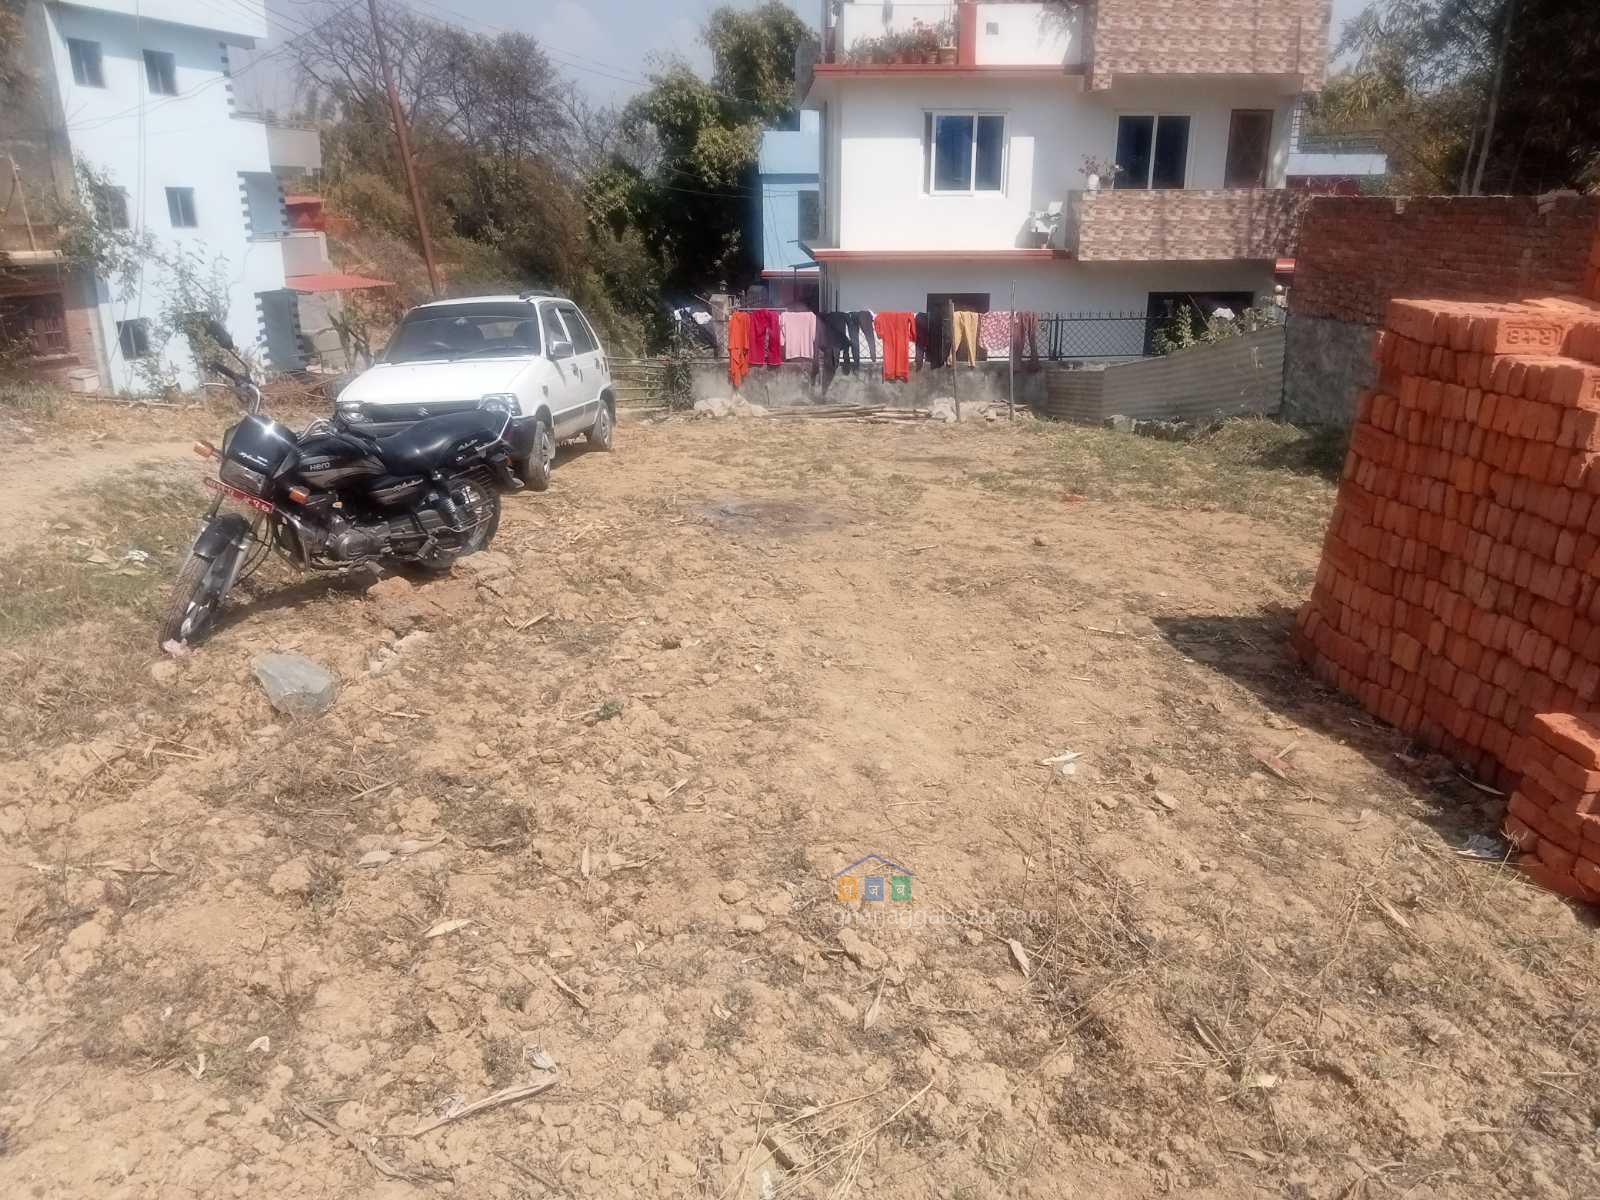 Land on Sale at Dhapakhel